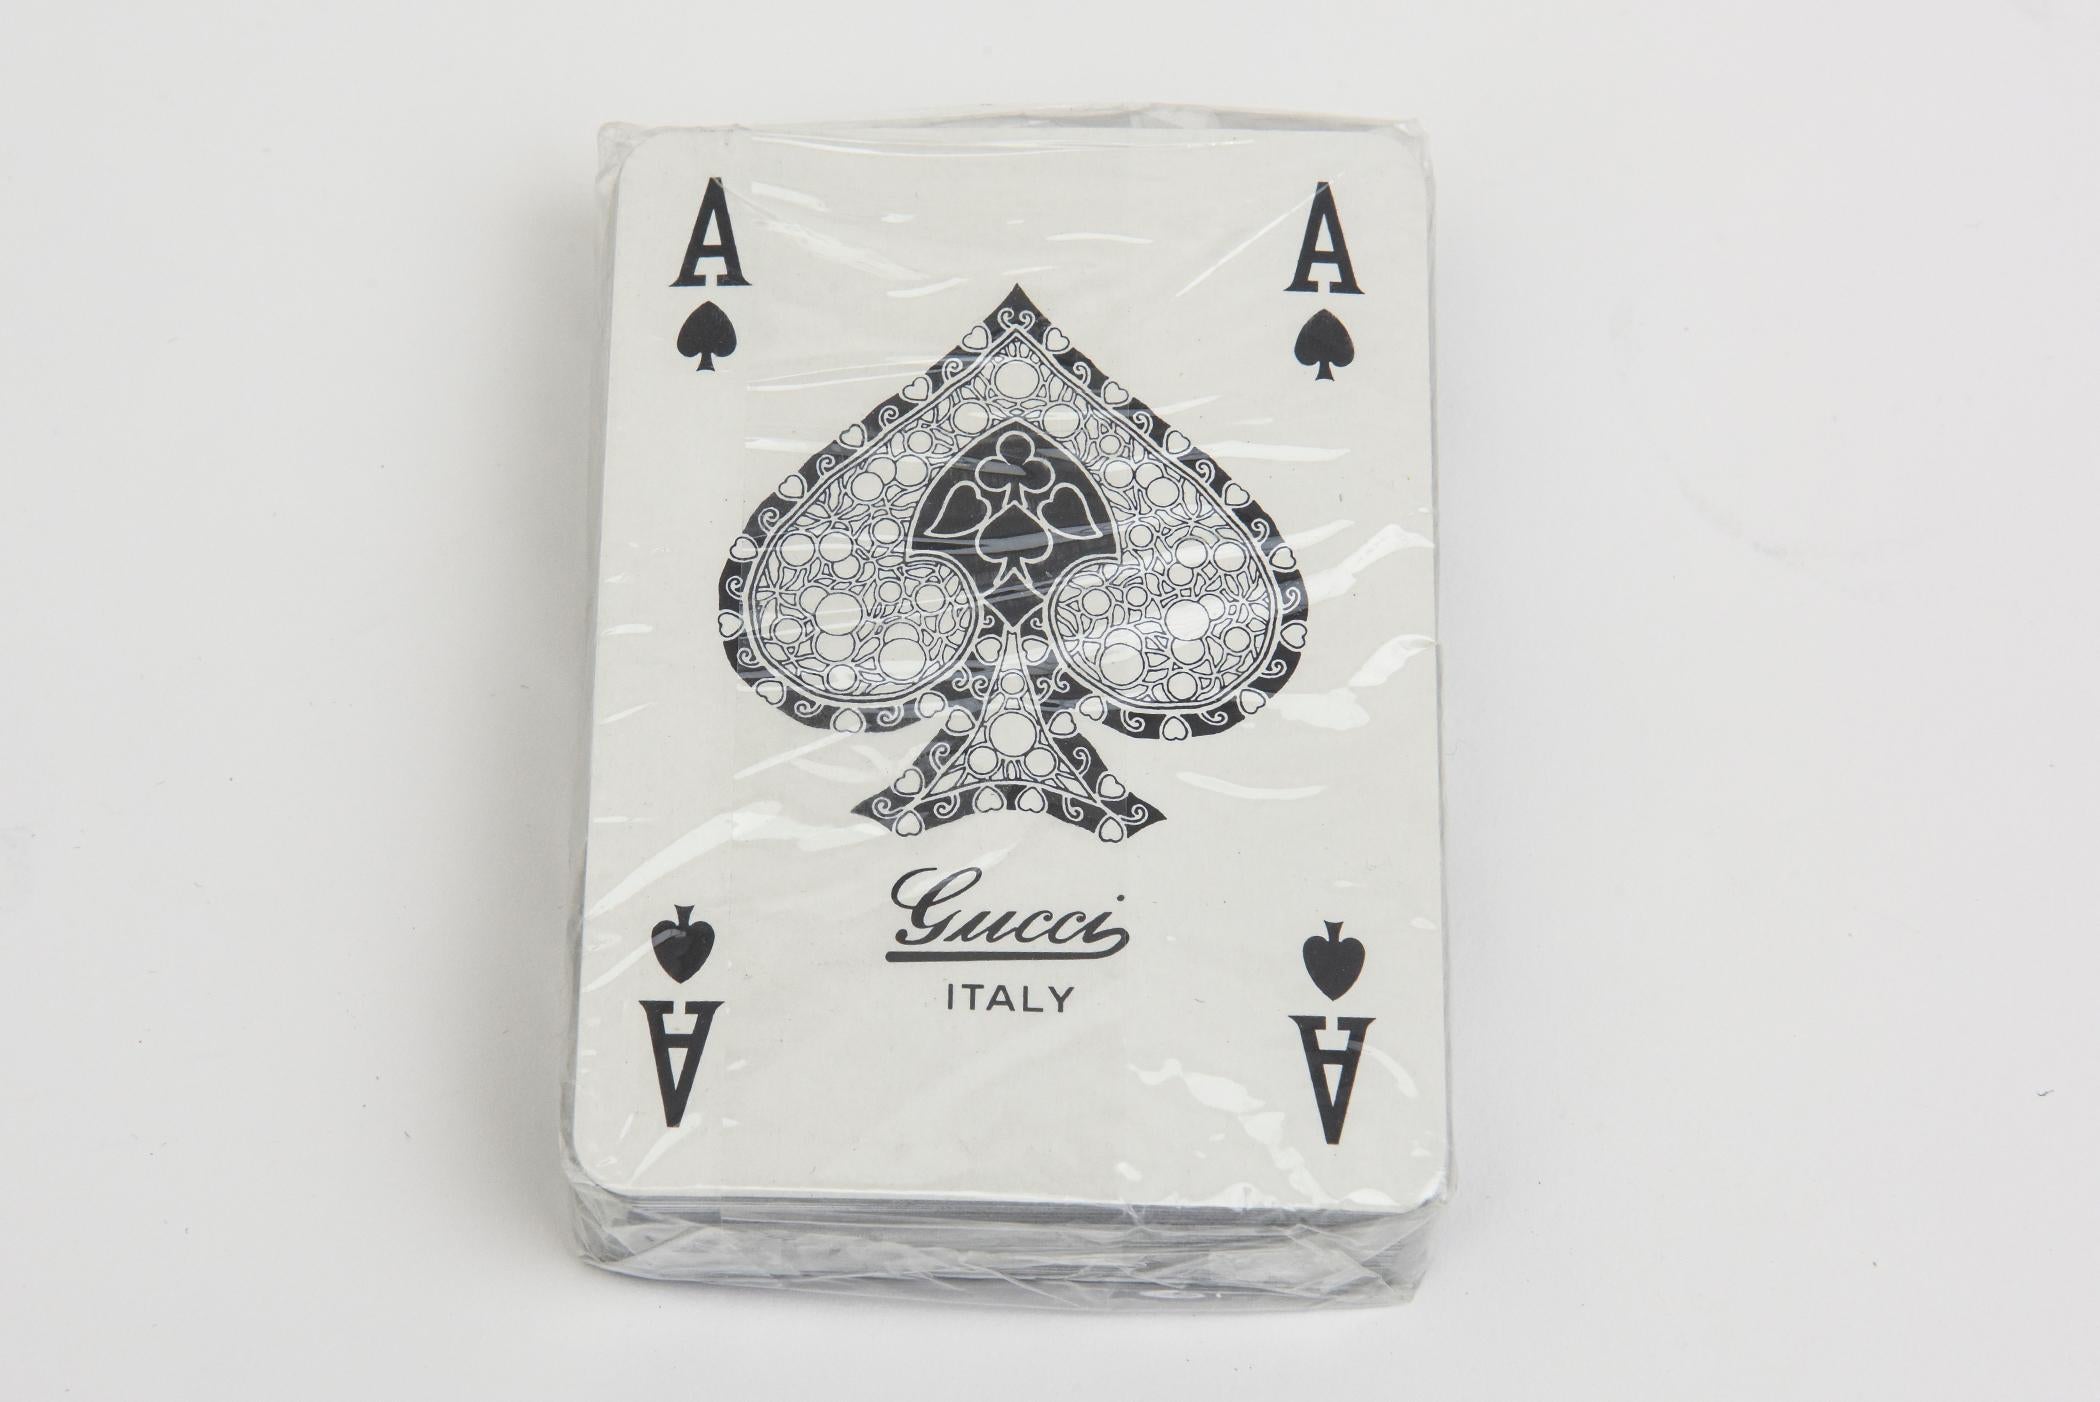 Ce jeu de cartes à jouer Gucci, jamais utilisé, est vintage et italien, datant des années 1970. Il s'agit de deux jeux, l'un en blanc et l'autre en noir pour le dos. L'un était déballé comme nous l'avons acheté et l'autre est encore sous cellophane.